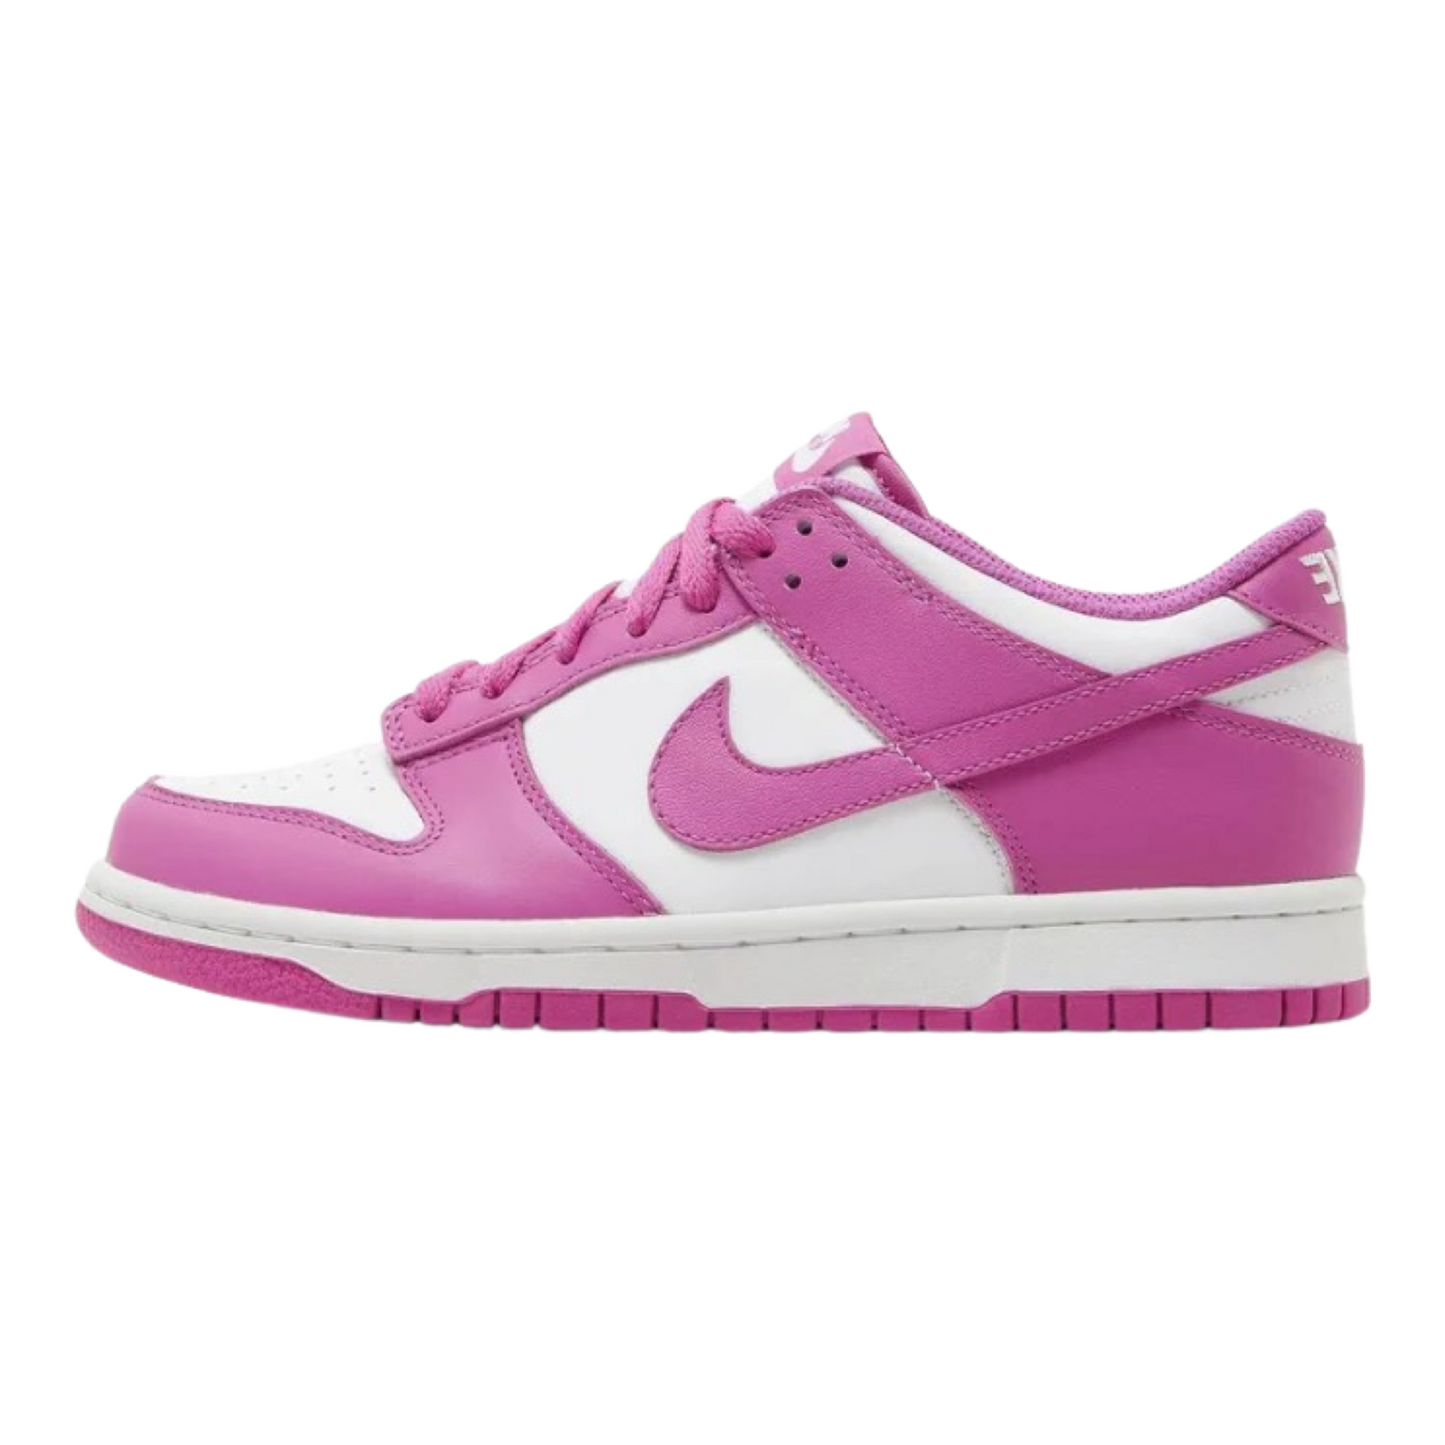 Nike Dunk Low “Fuchsia Pink” (GS)